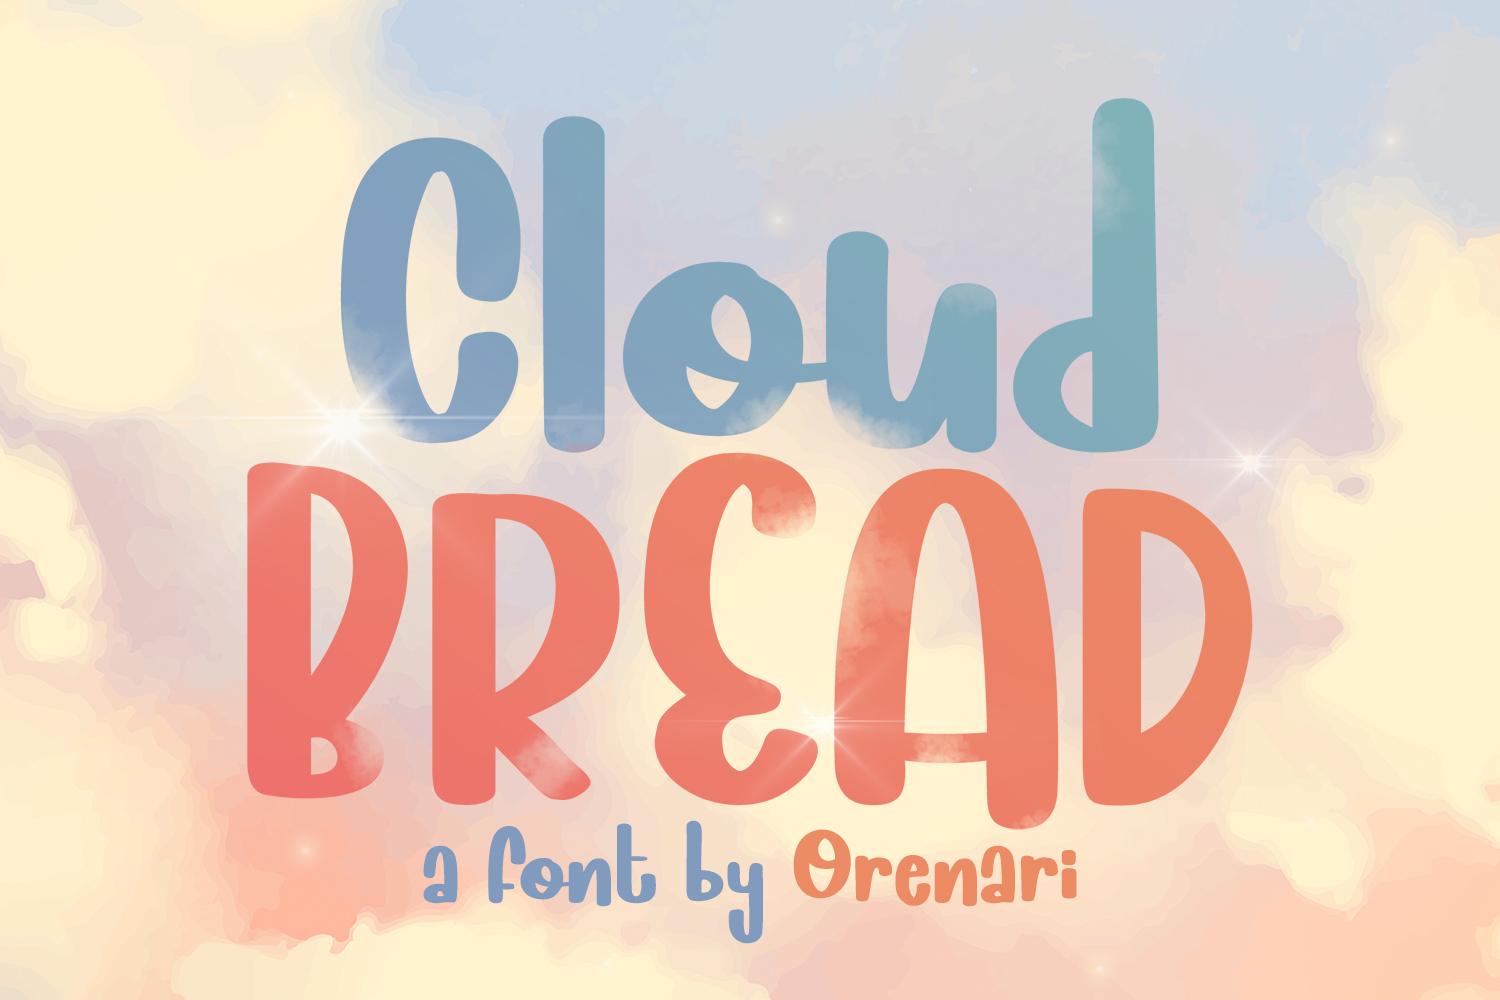 Cloud Bread Font